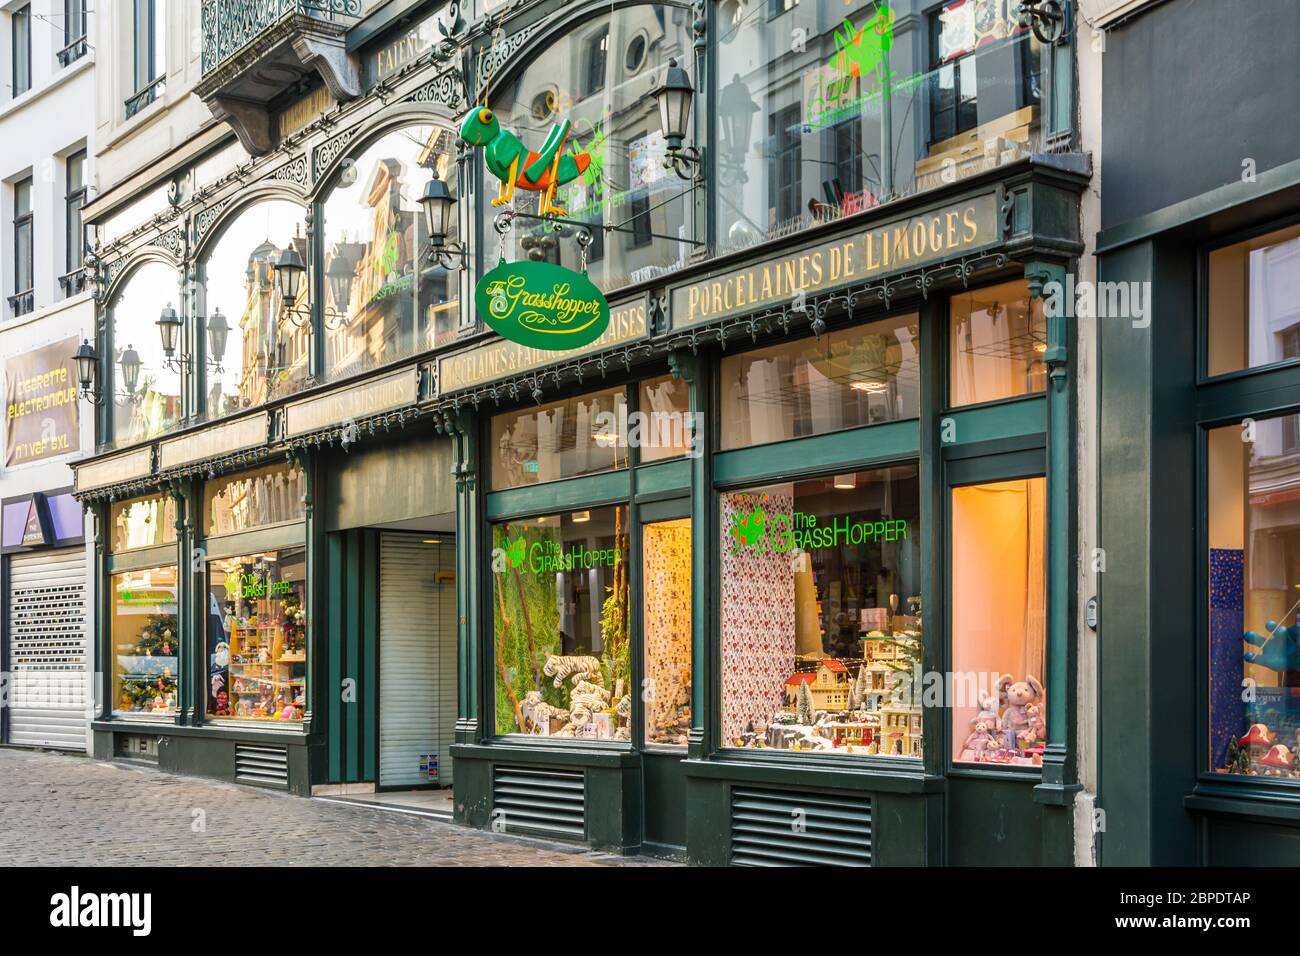 Le Grasshopper Bruxelles: Magasin près de la Grote Markt plein de jouets en  temps réel pour les enfants. Deux bâtiments de magasins en vert foncé avec  de grandes fenêtres Photo Stock -